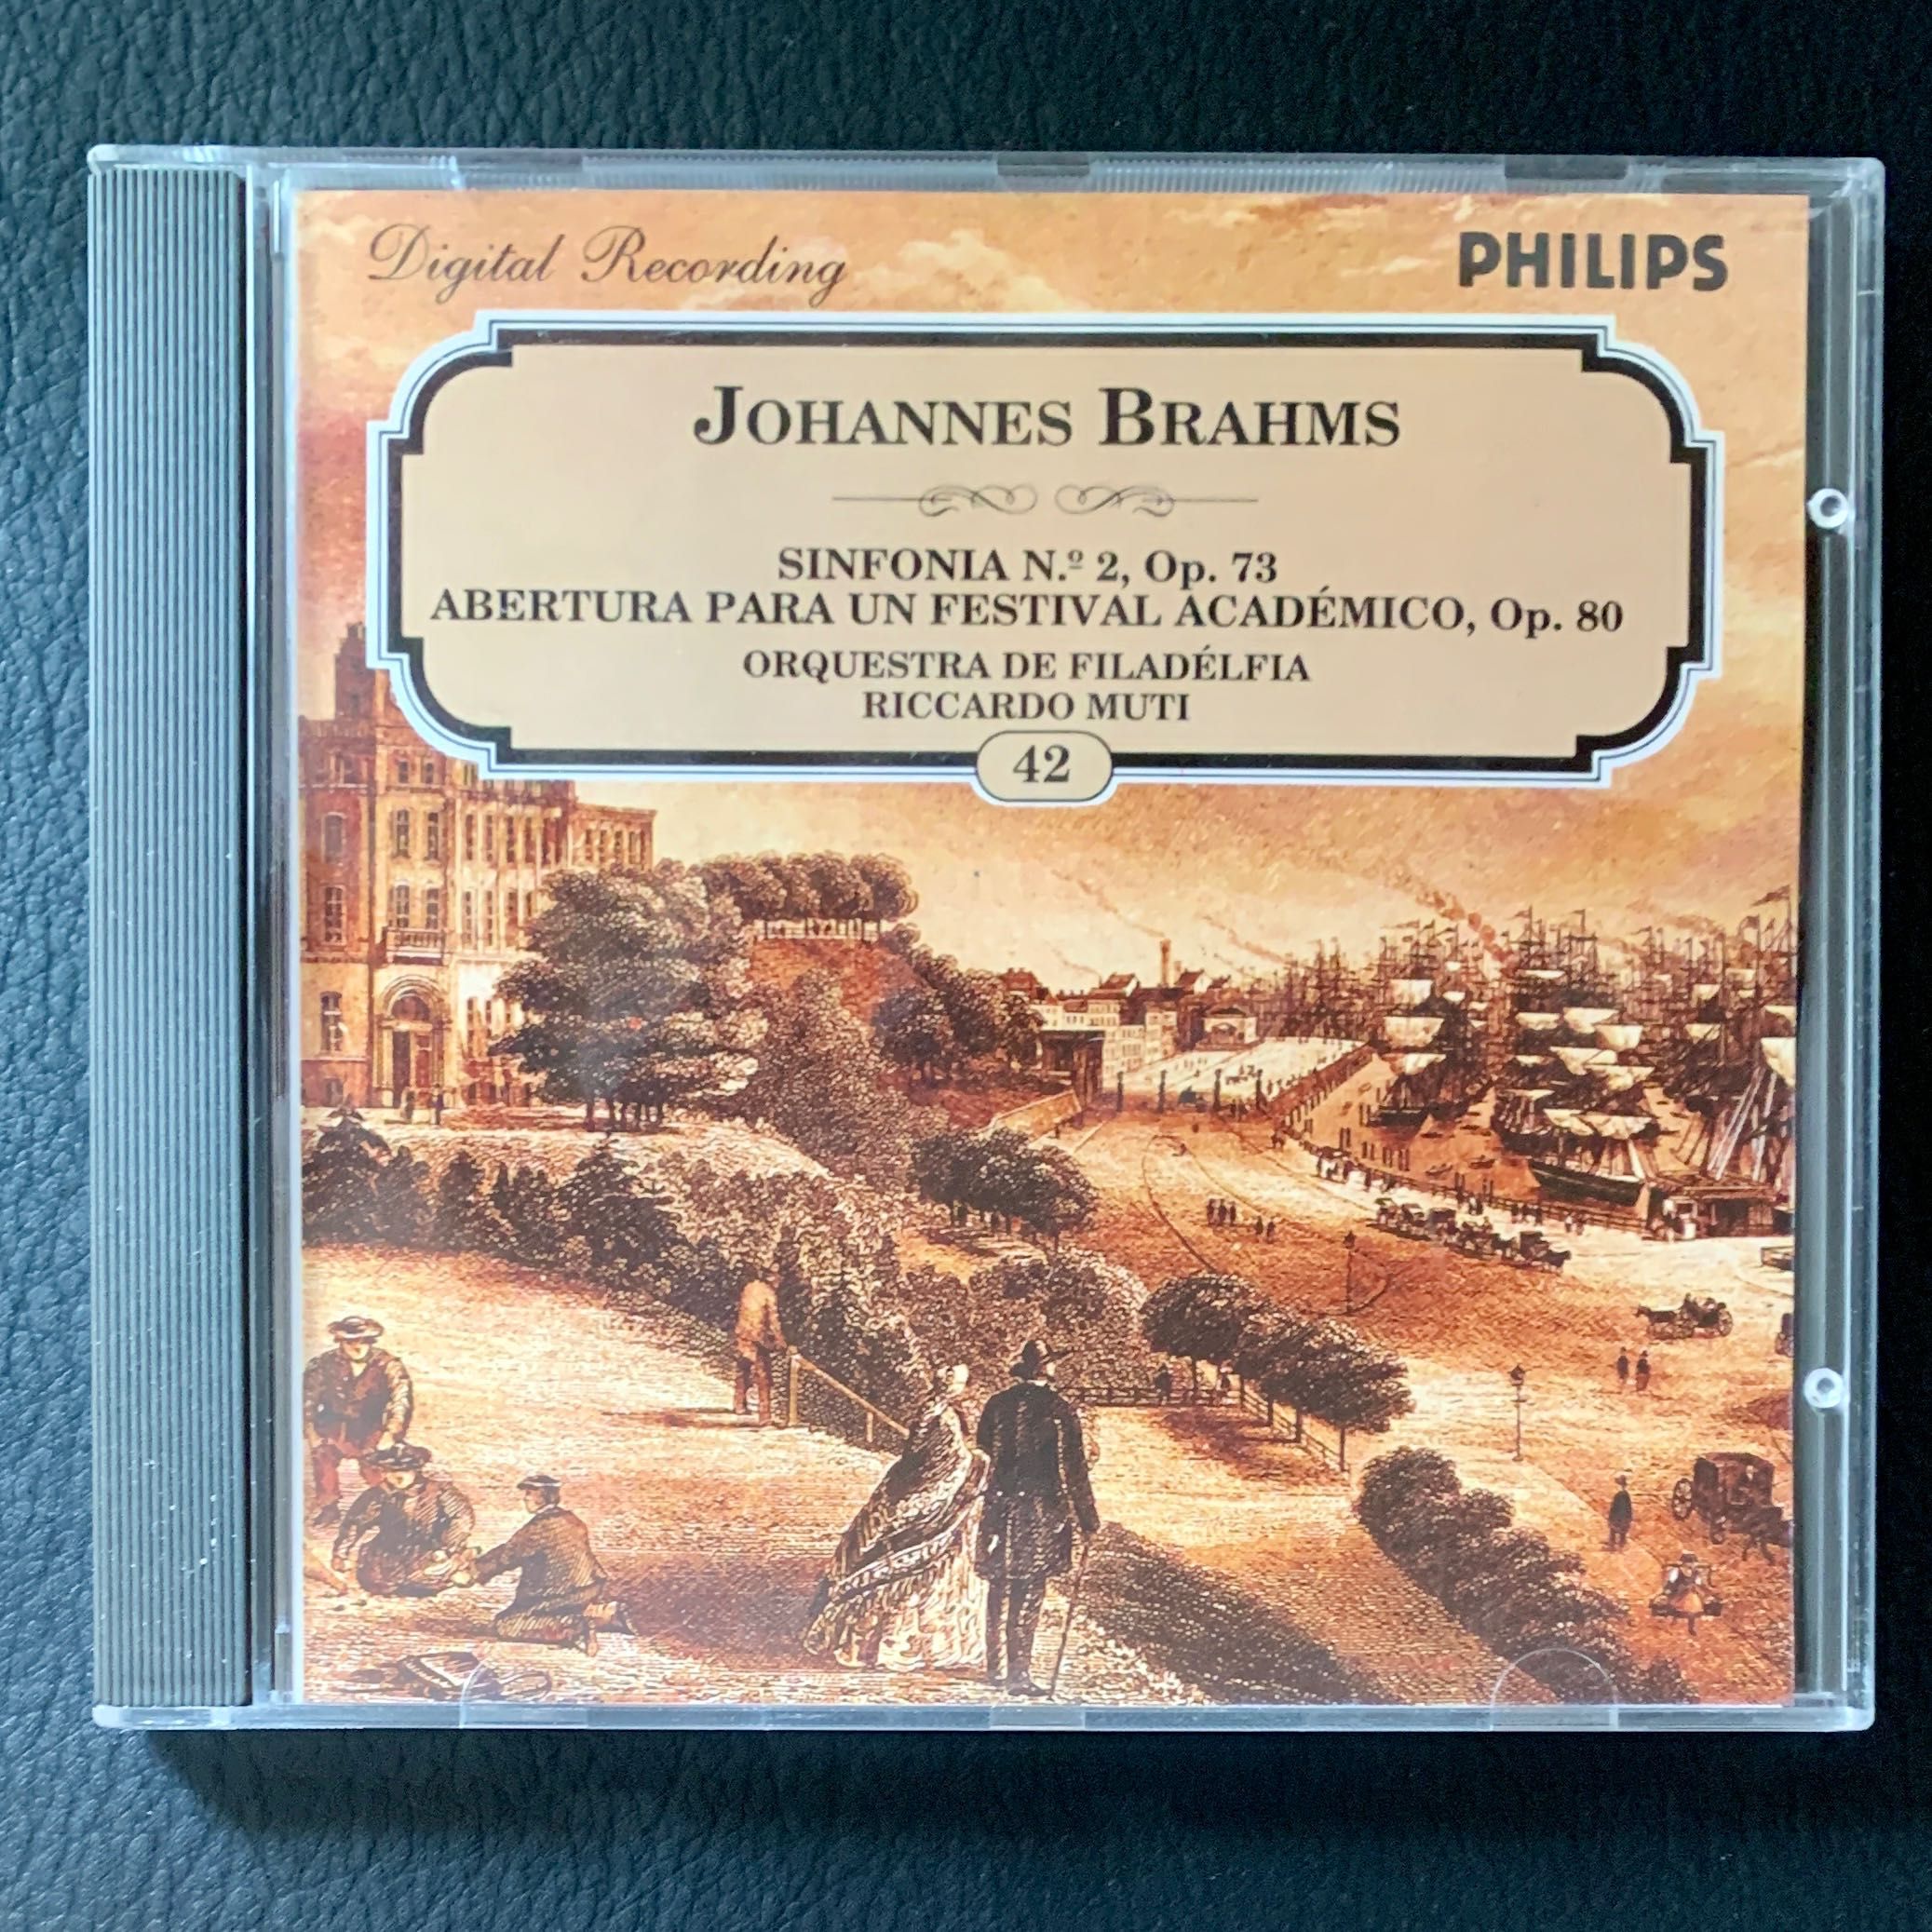 4. CDs clássica: Brahms: sinfonias, concerto para piano, requiem